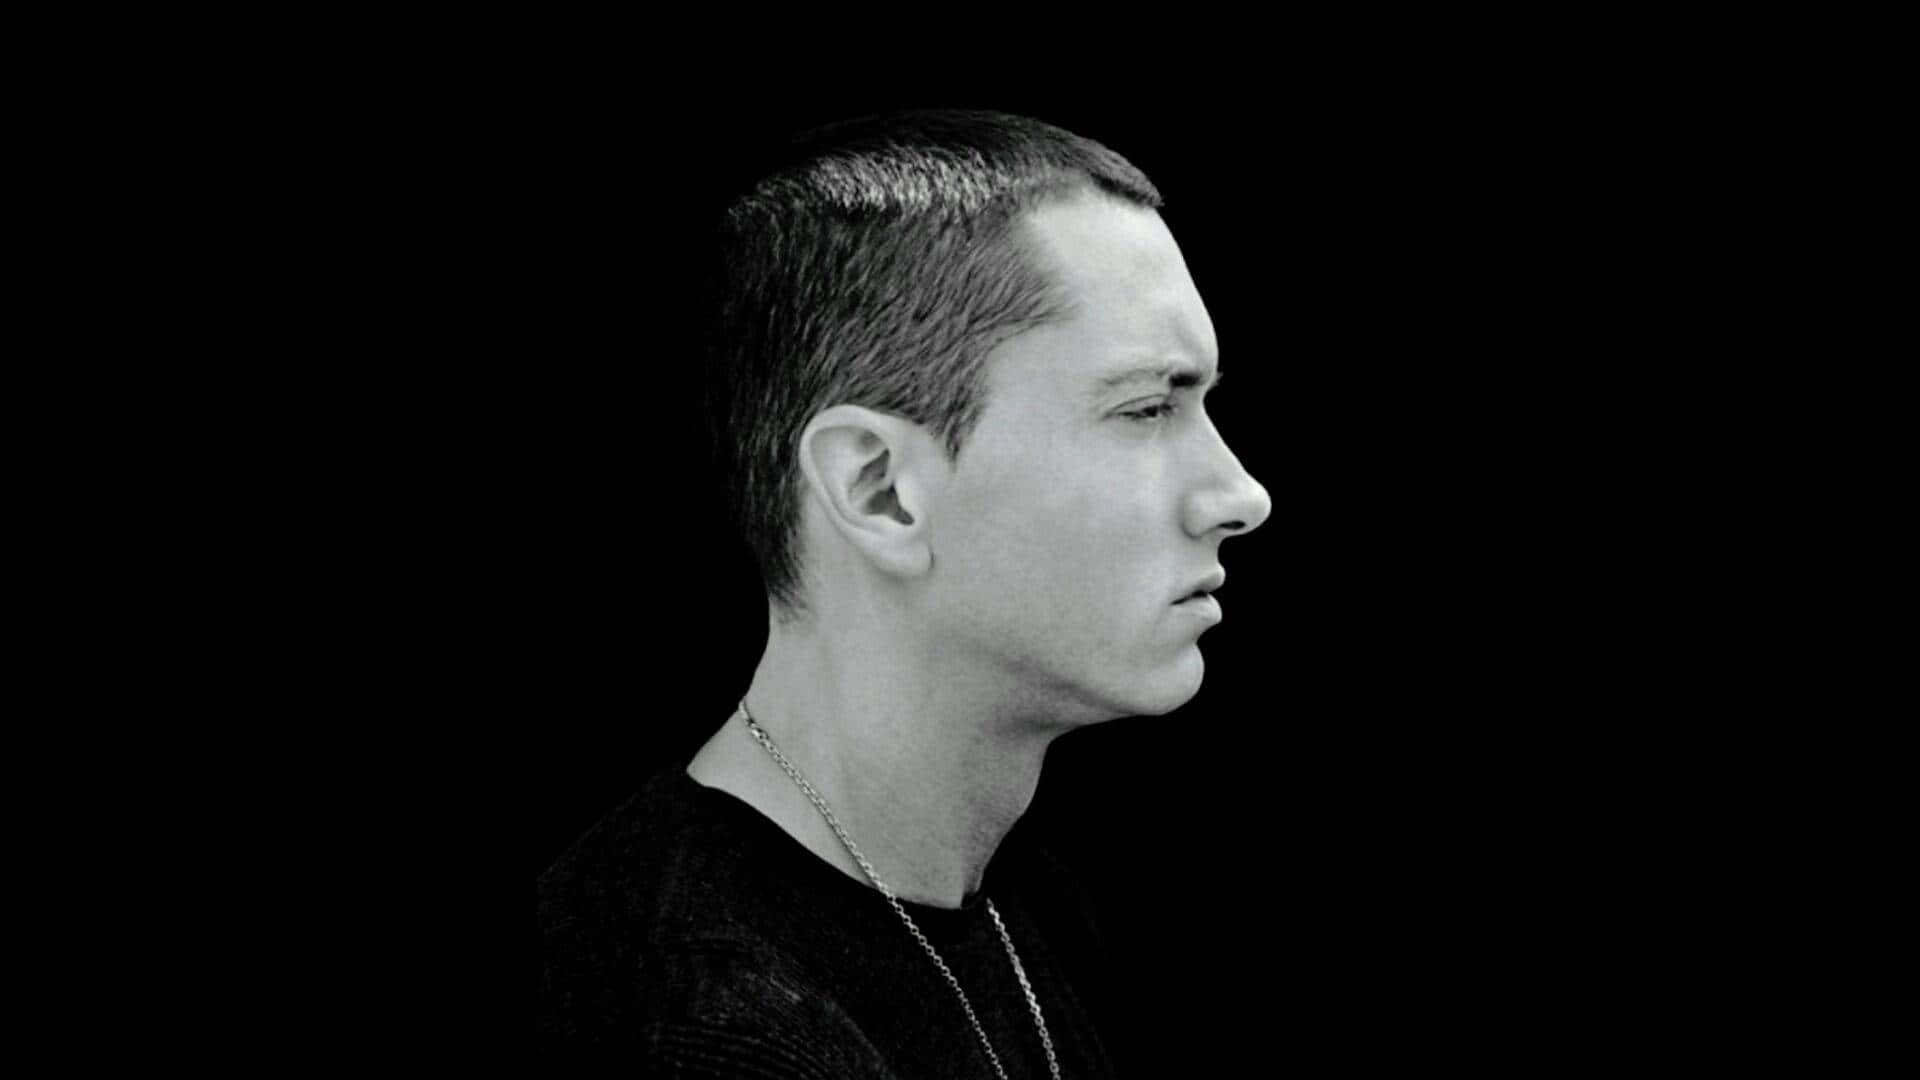 Eminemche Si Esibisce Dal Vivo Sul Palco.